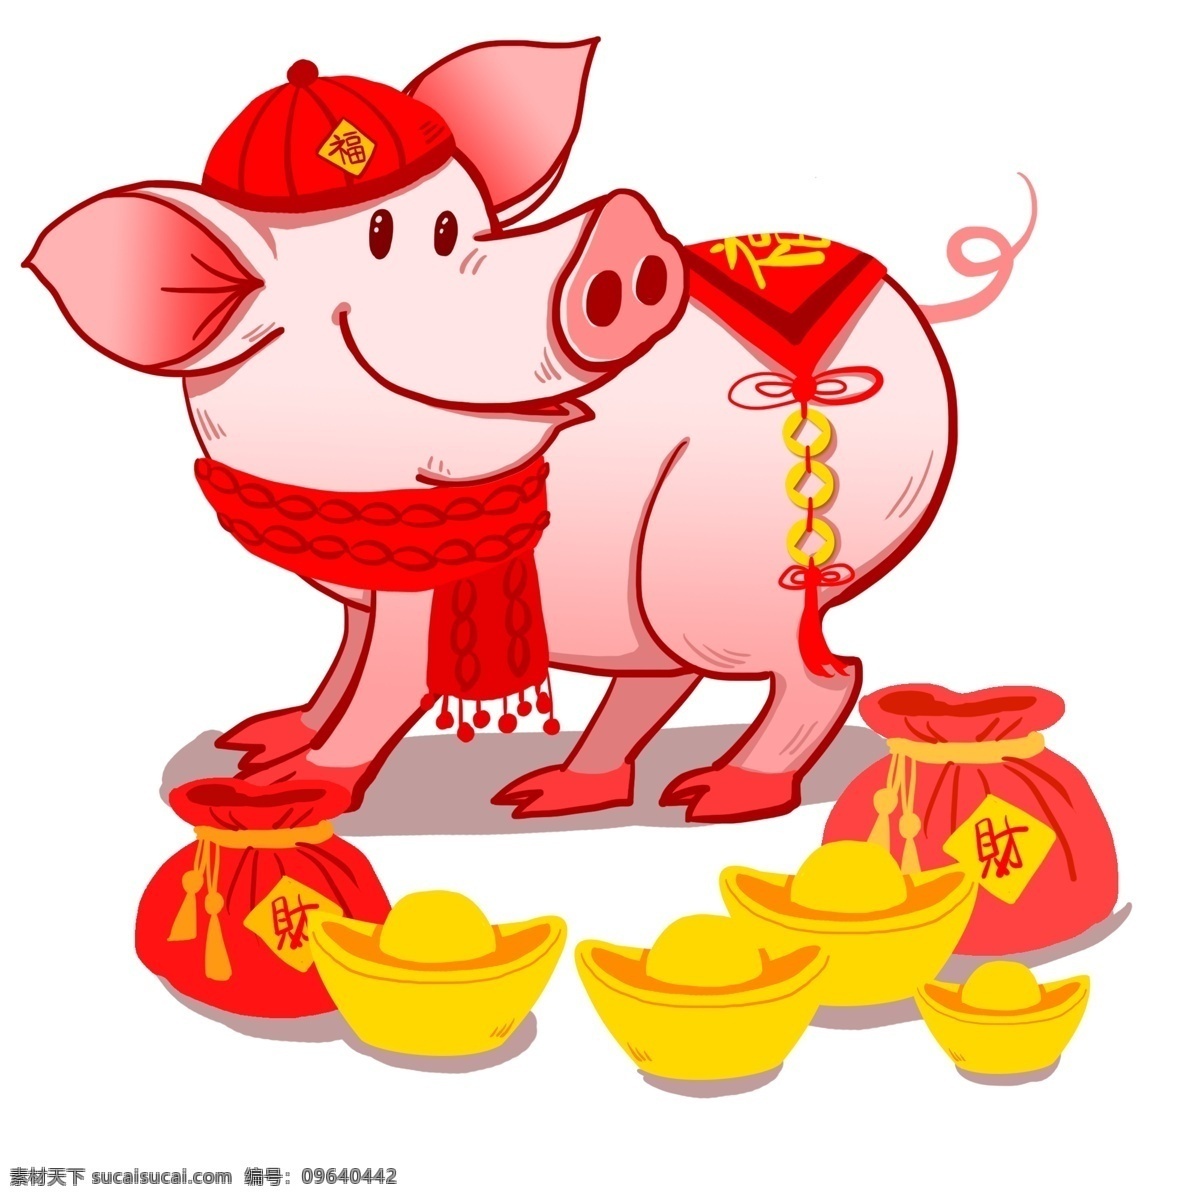 新年 卡通 手绘 福 猪 卡通小猪 新年快乐 新年祝贺 过新年 金元宝 元宝 发财 小猪 春节 猪年 过年 福袋 福猪 过大年